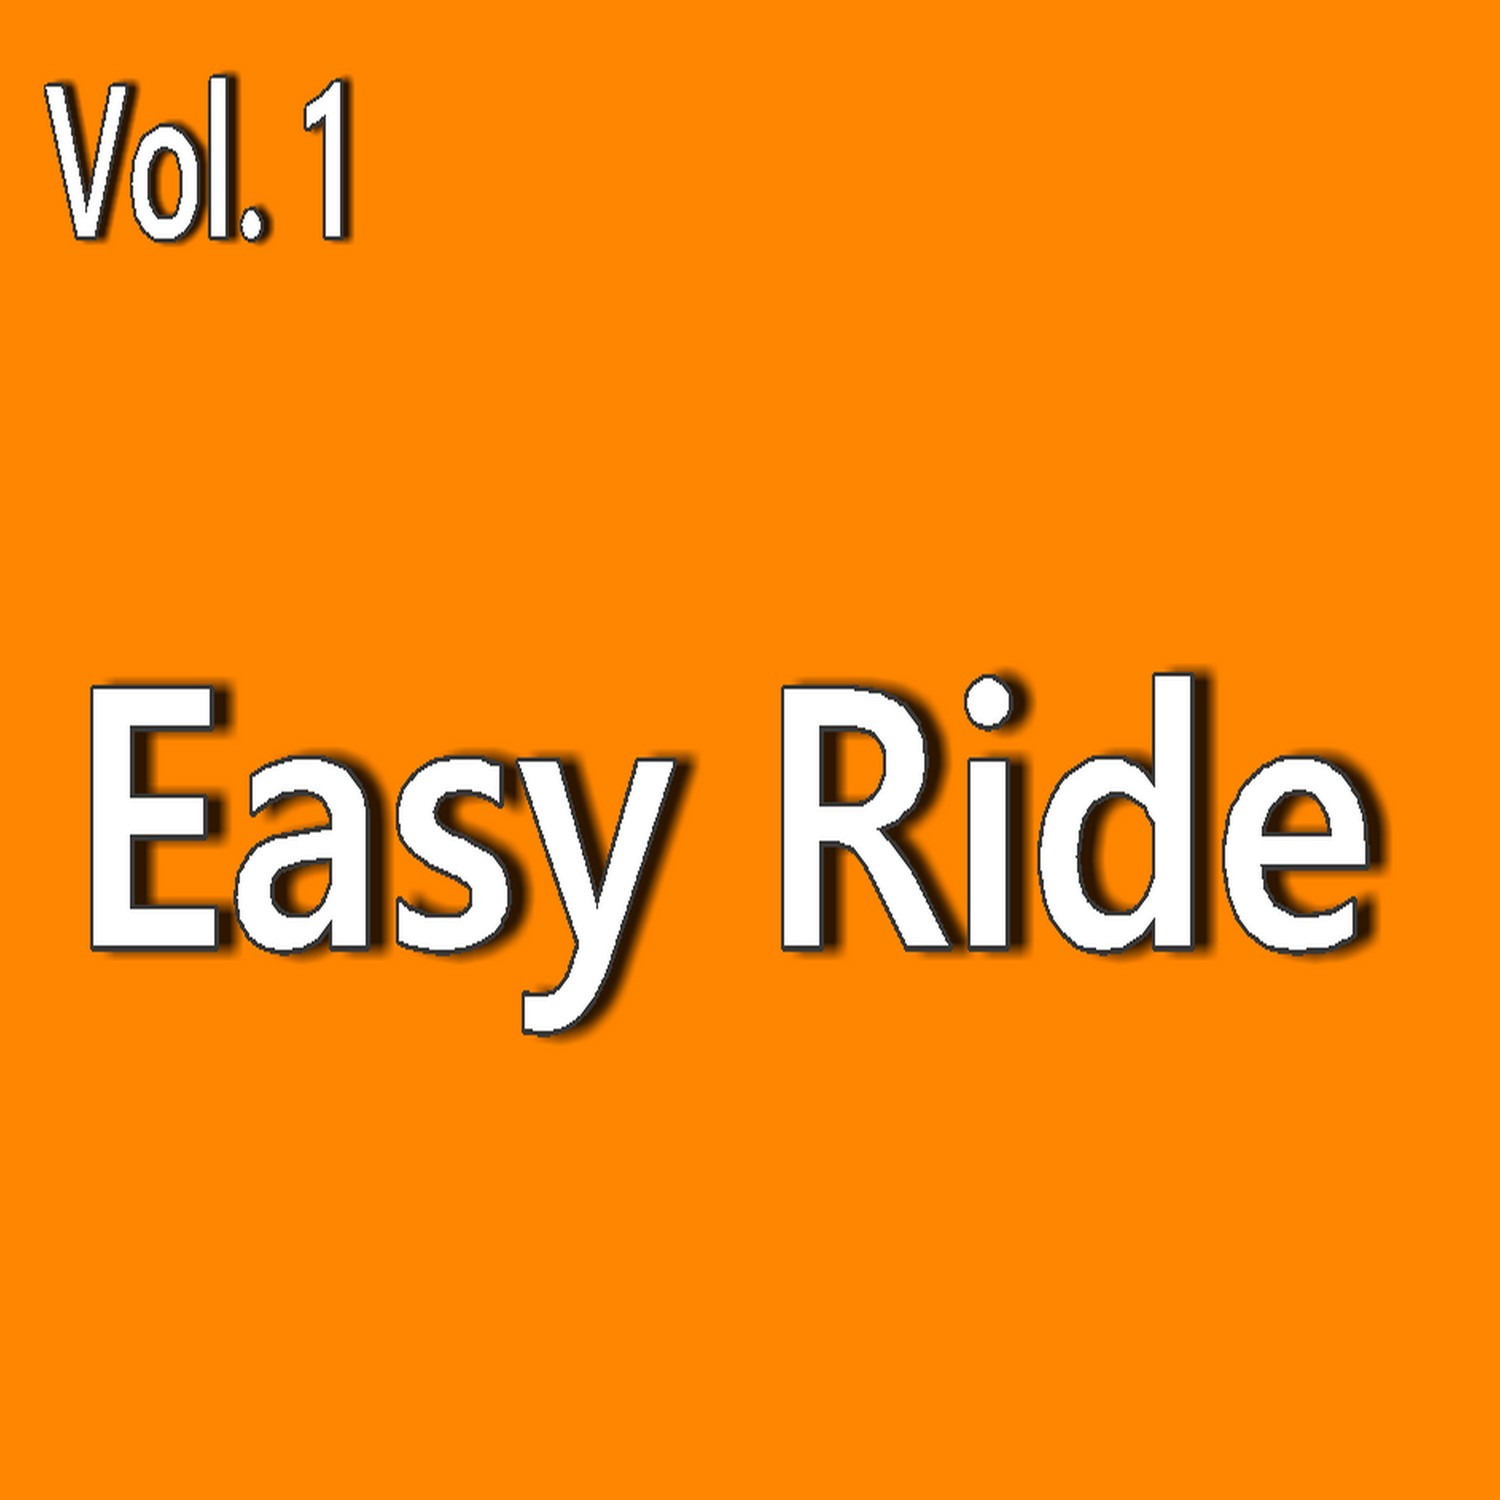 Easy Ride, Vol. 1